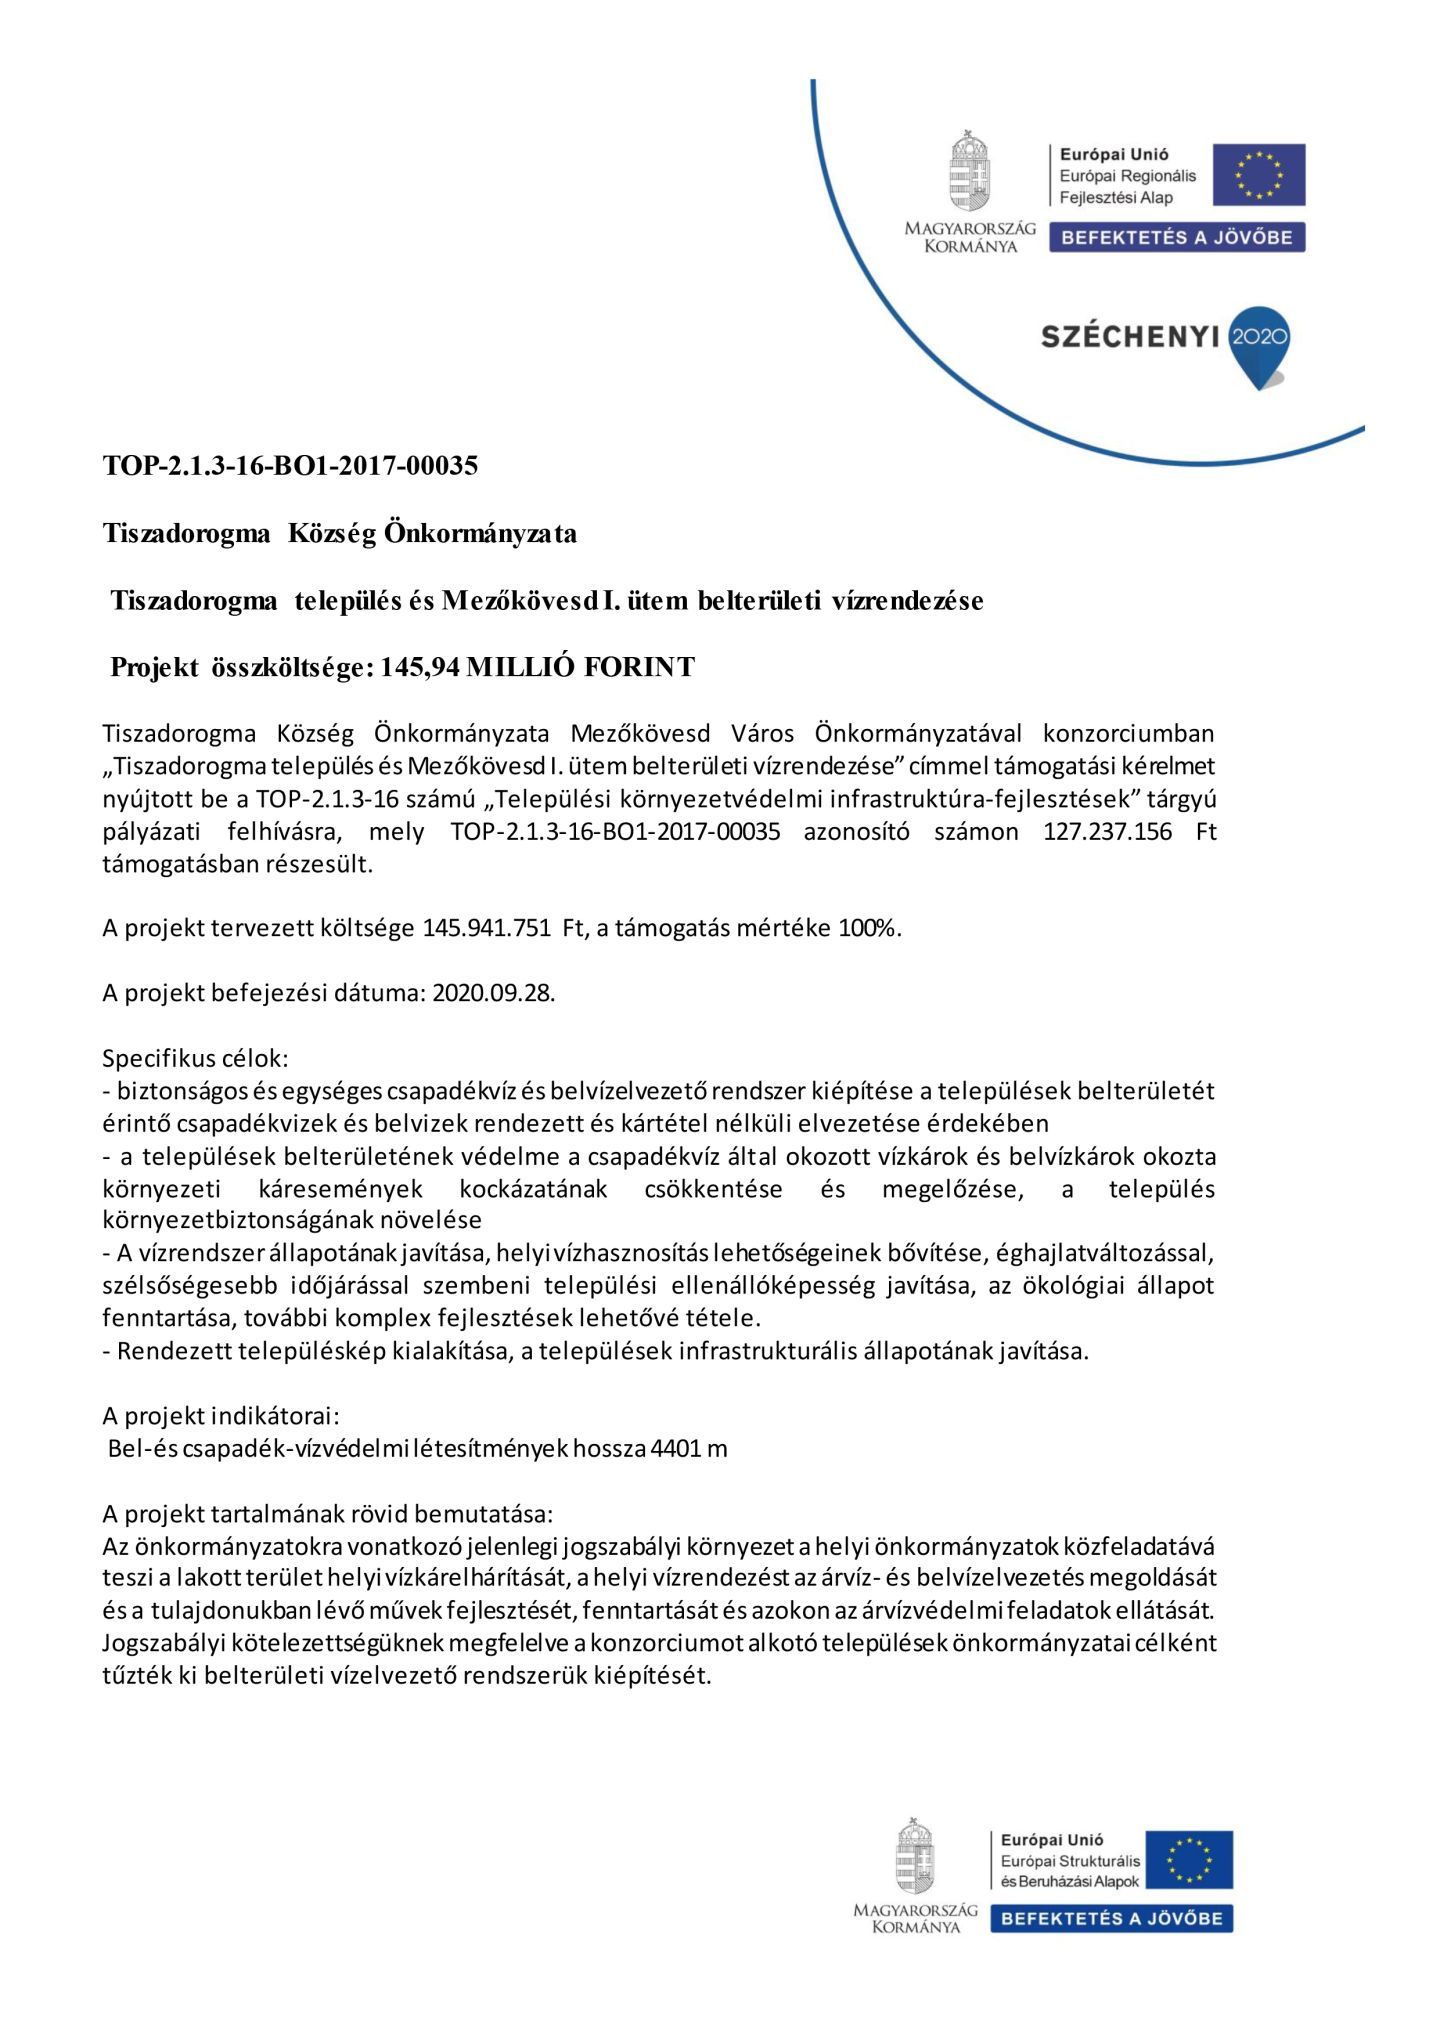 Tiszadorogma település és Mezőkövesd I. ütem belterületi vízrendezése projekt leírása 